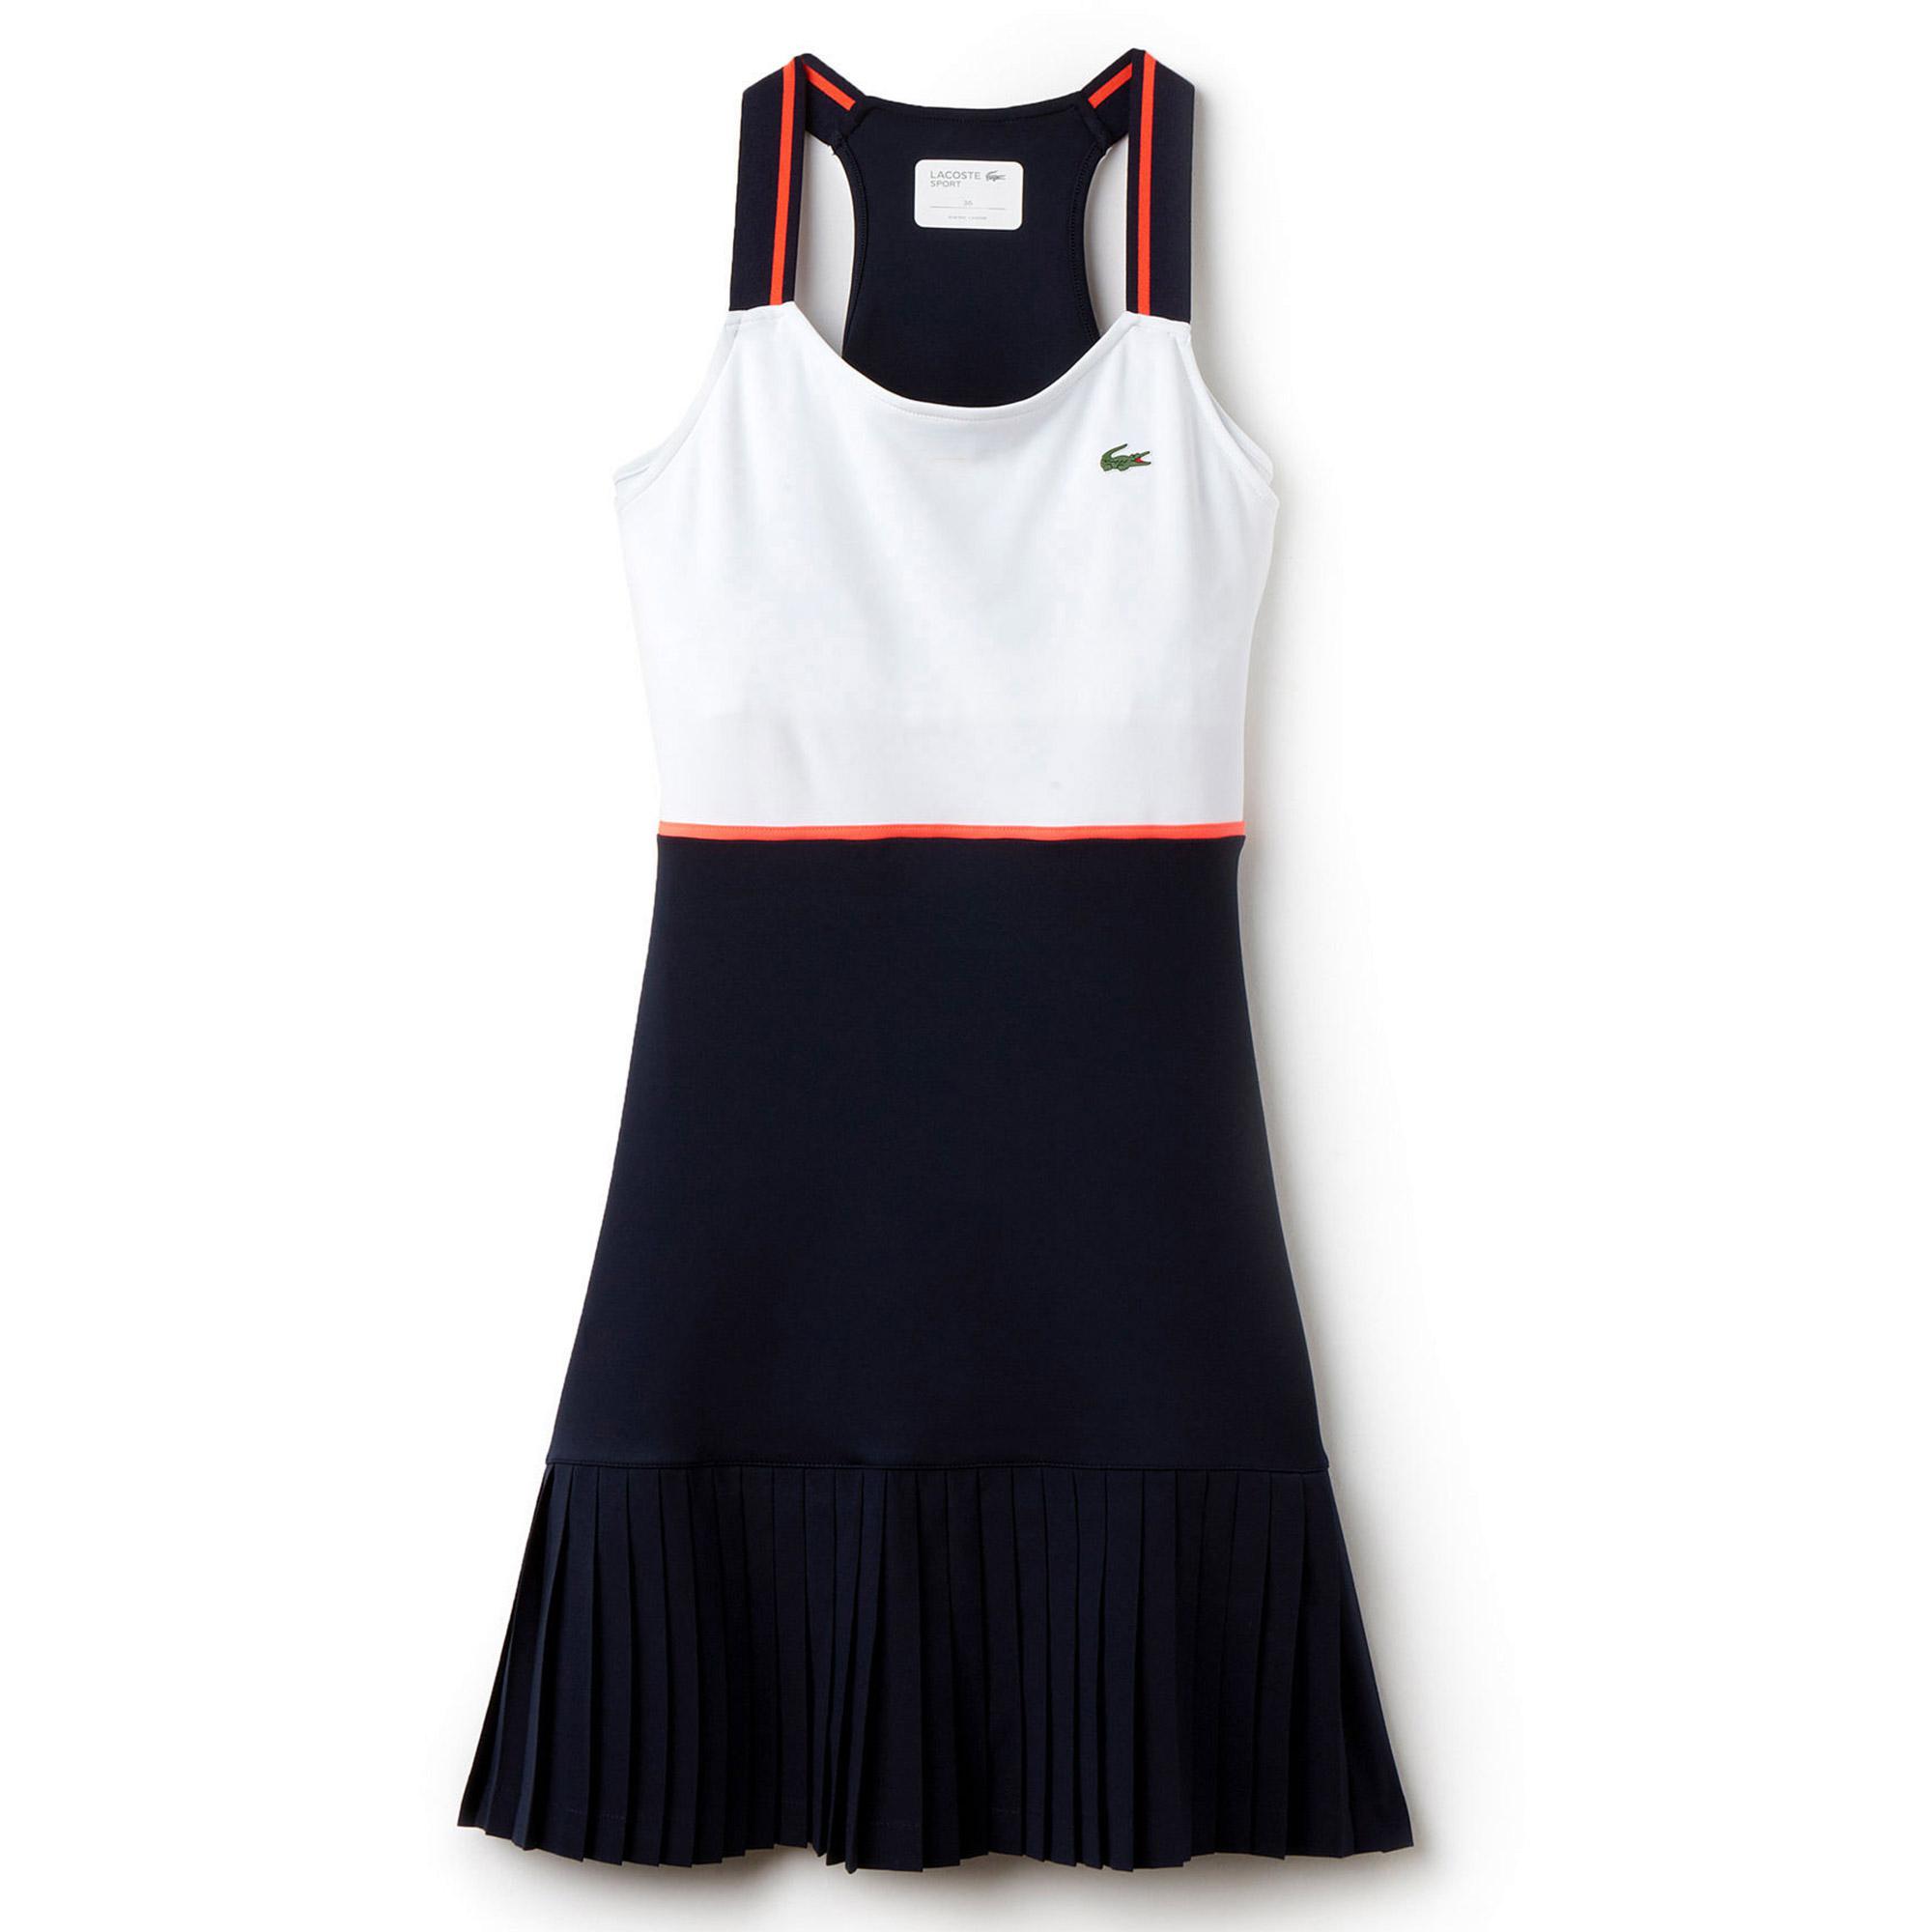 Lacoste Womens Womens Sport Sleeveless Colorblock Tennis Dress Tennis Dress 